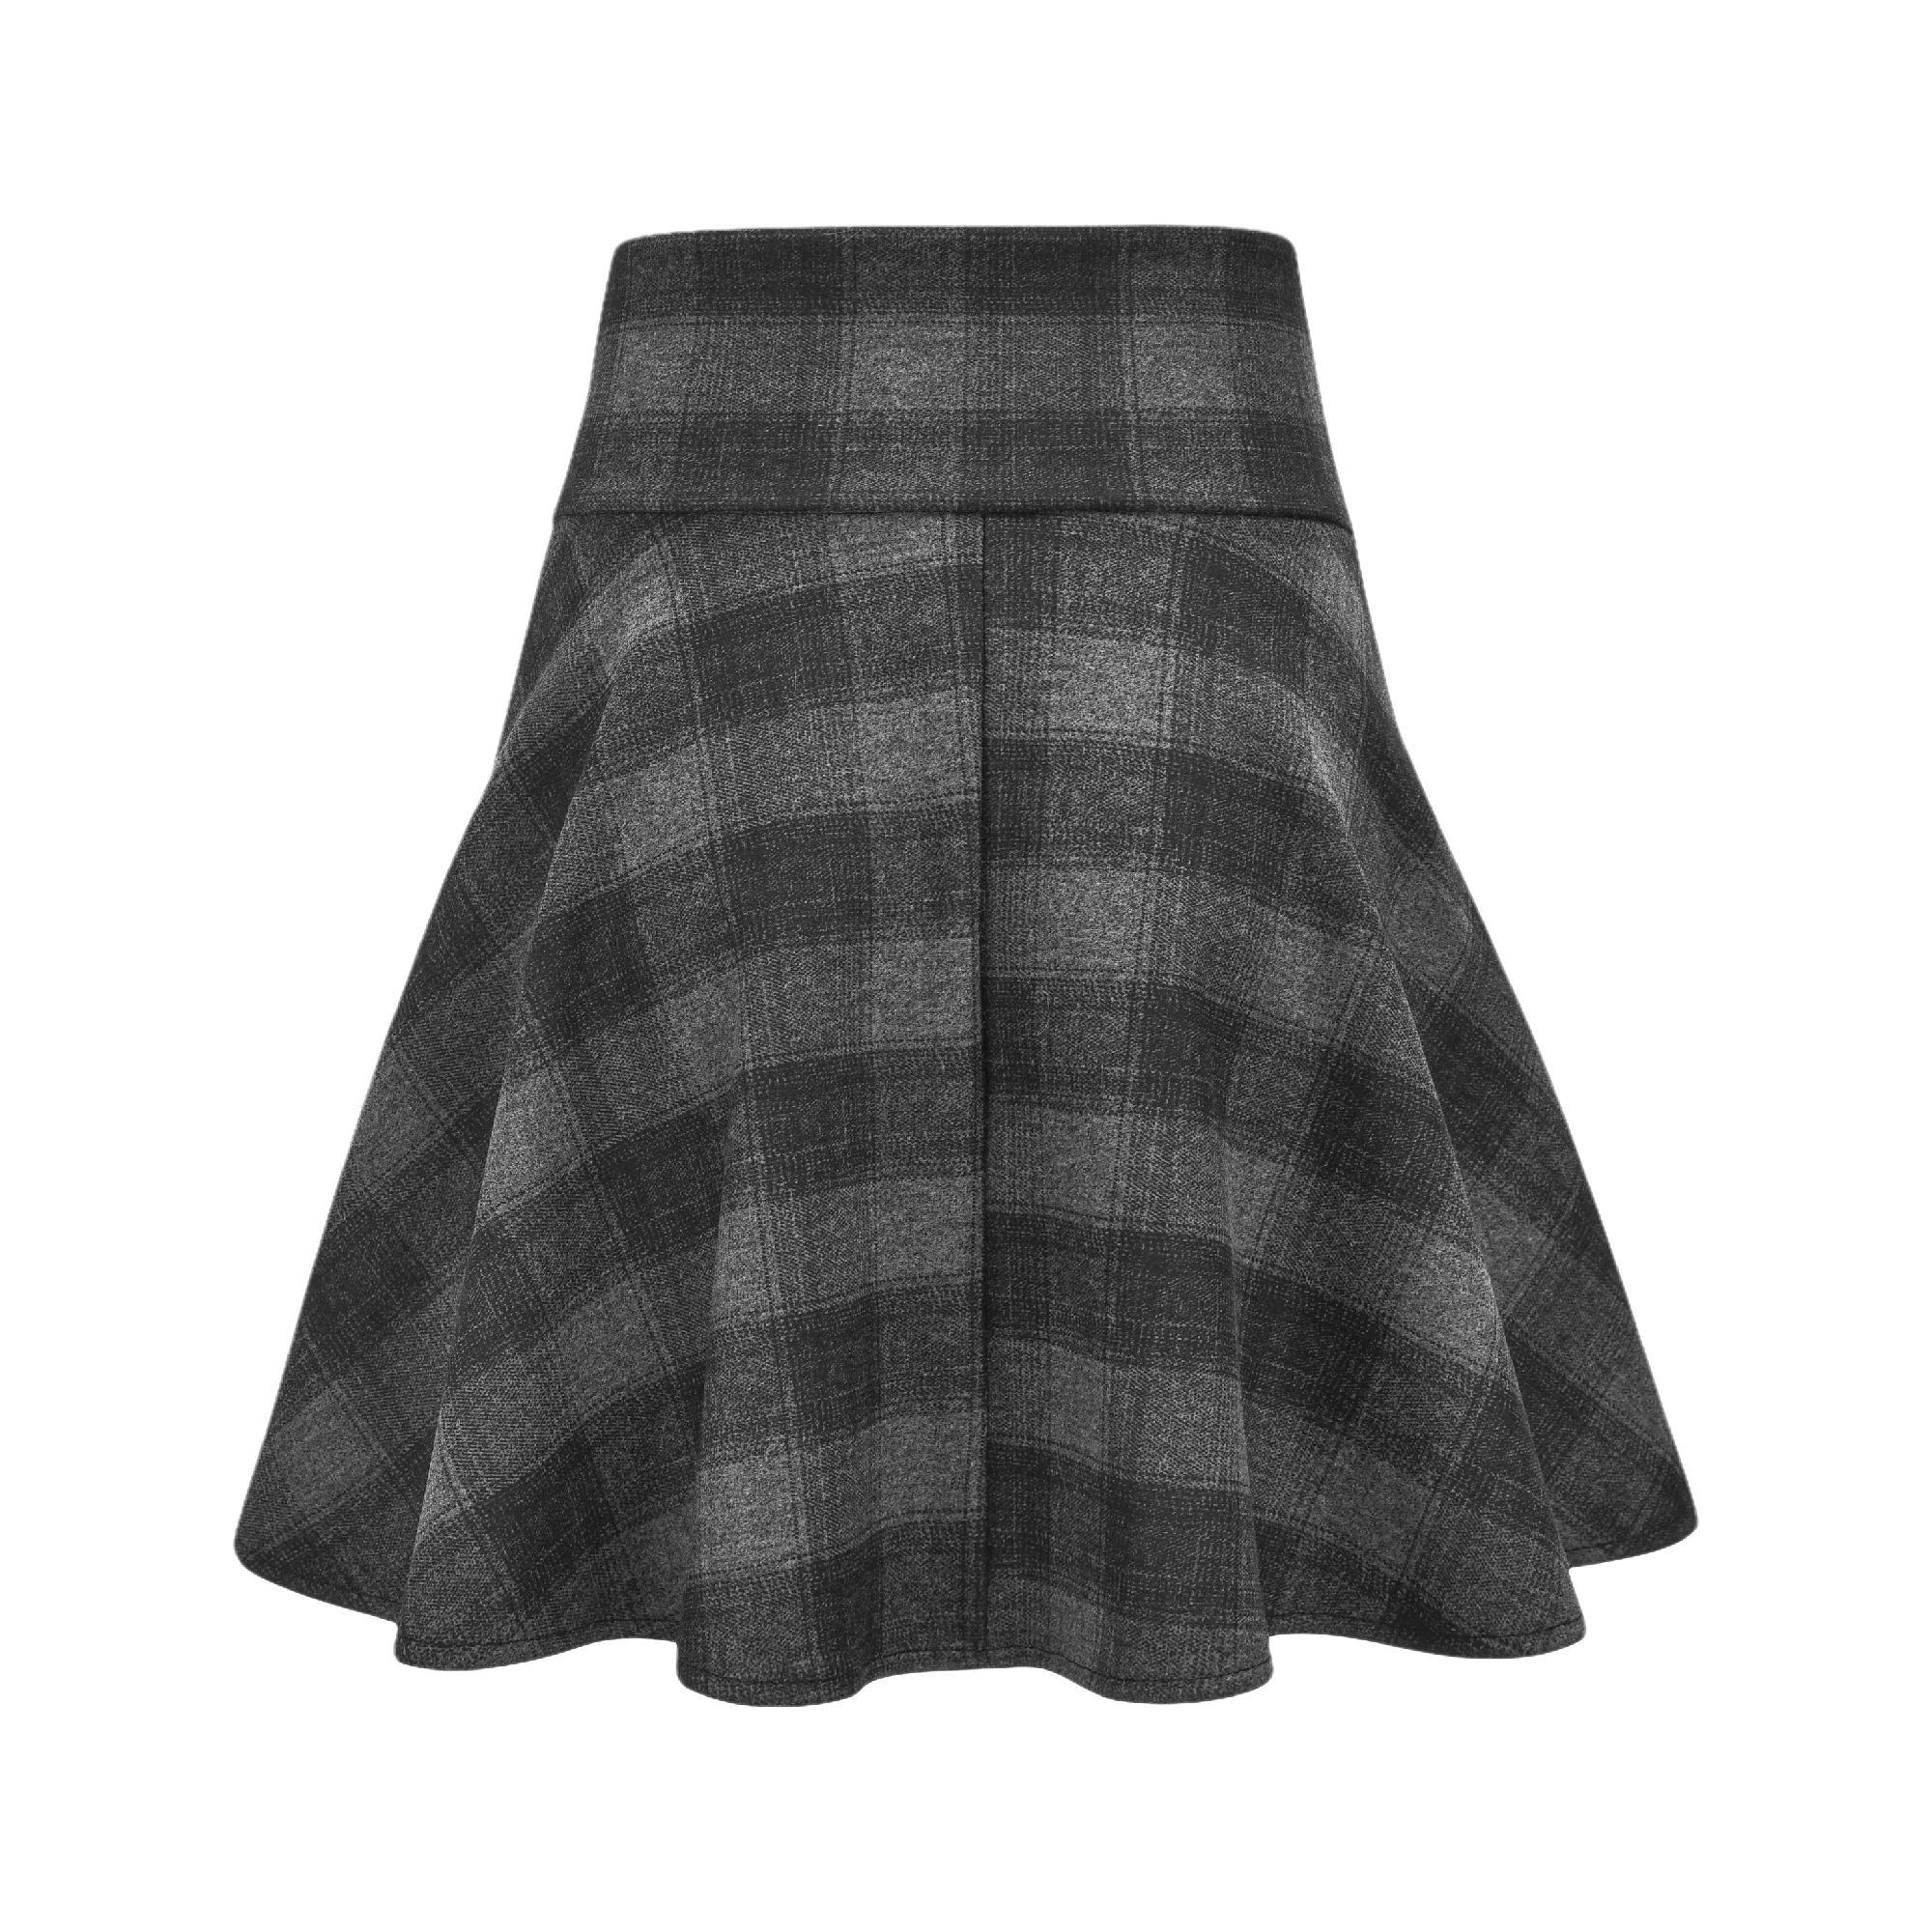 Vertigo-check print pleated high-waist skirt - itsy, it‘z different